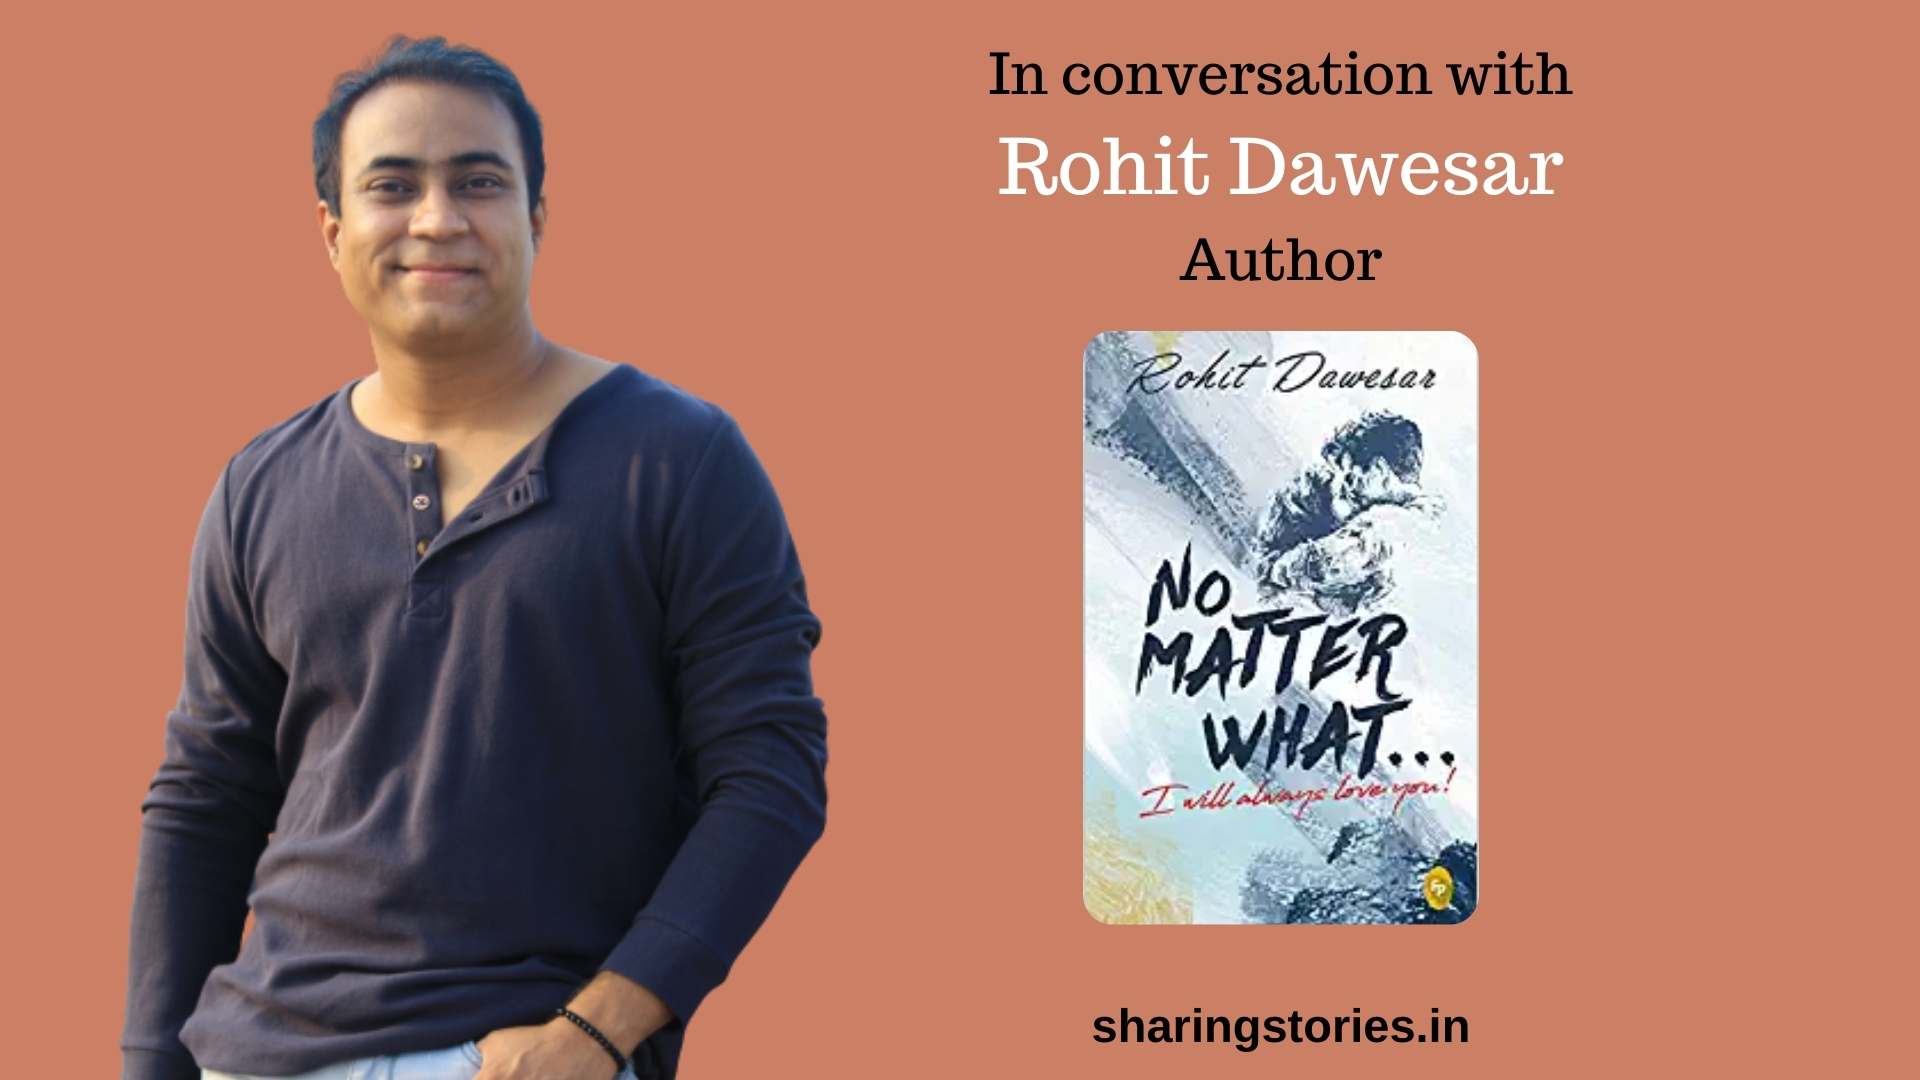 Author Rohit Dawesar